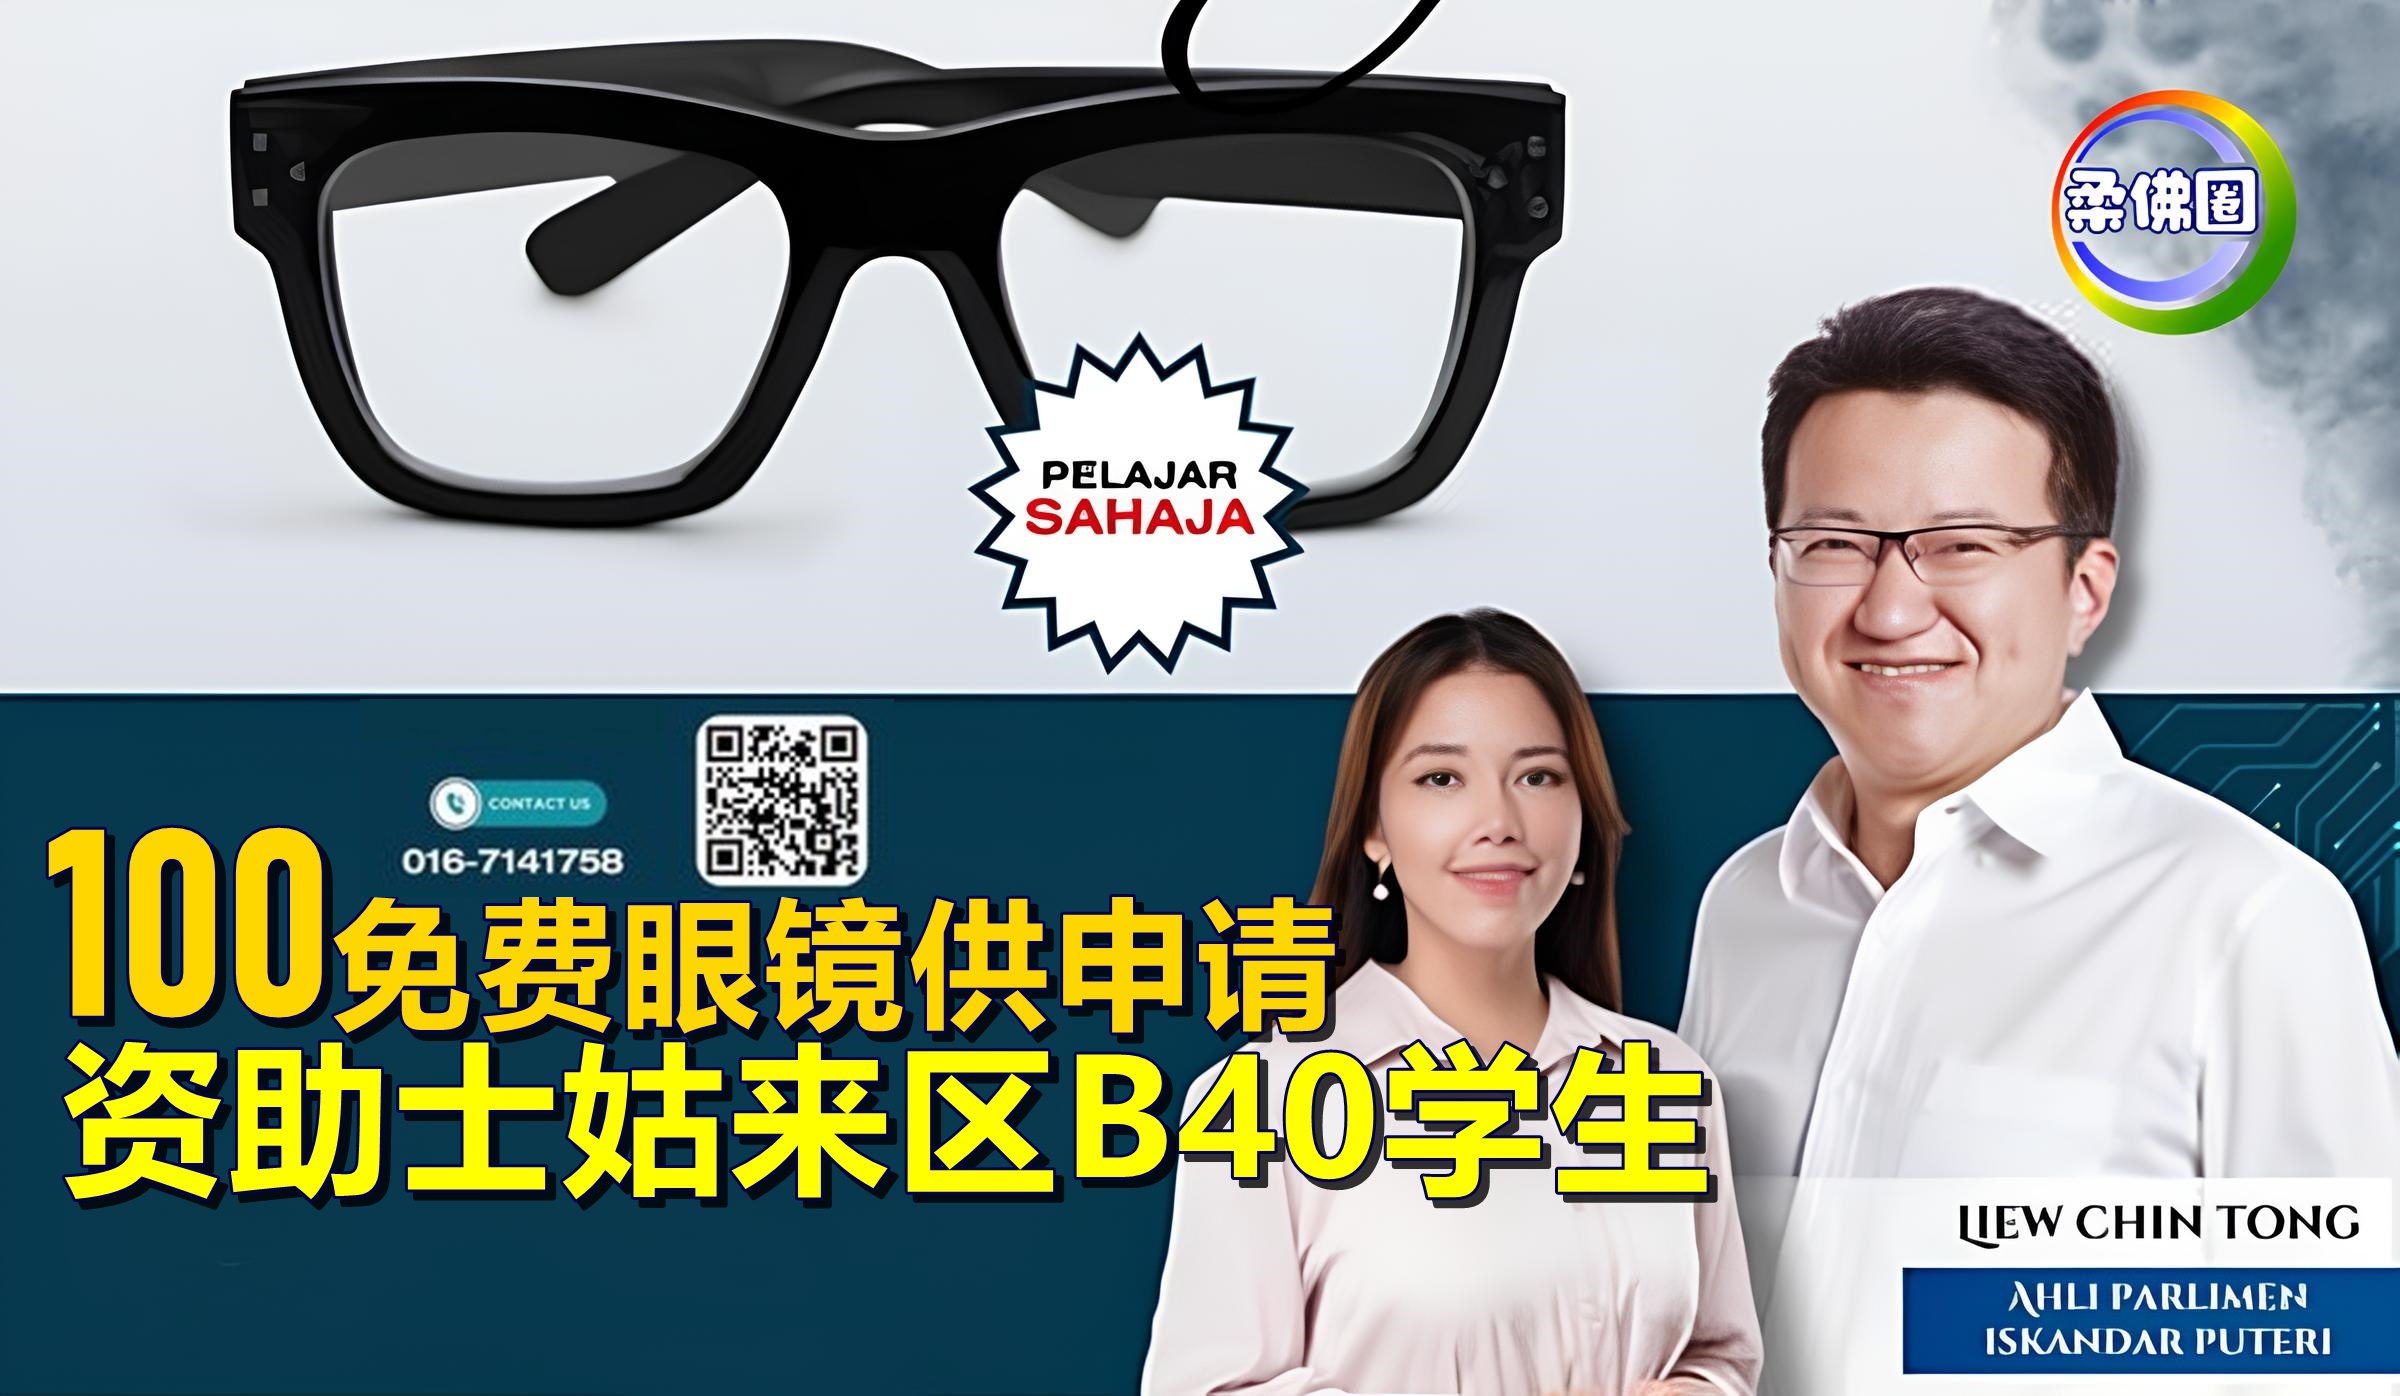 资助士姑来区B40学生   100免费眼镜供申请